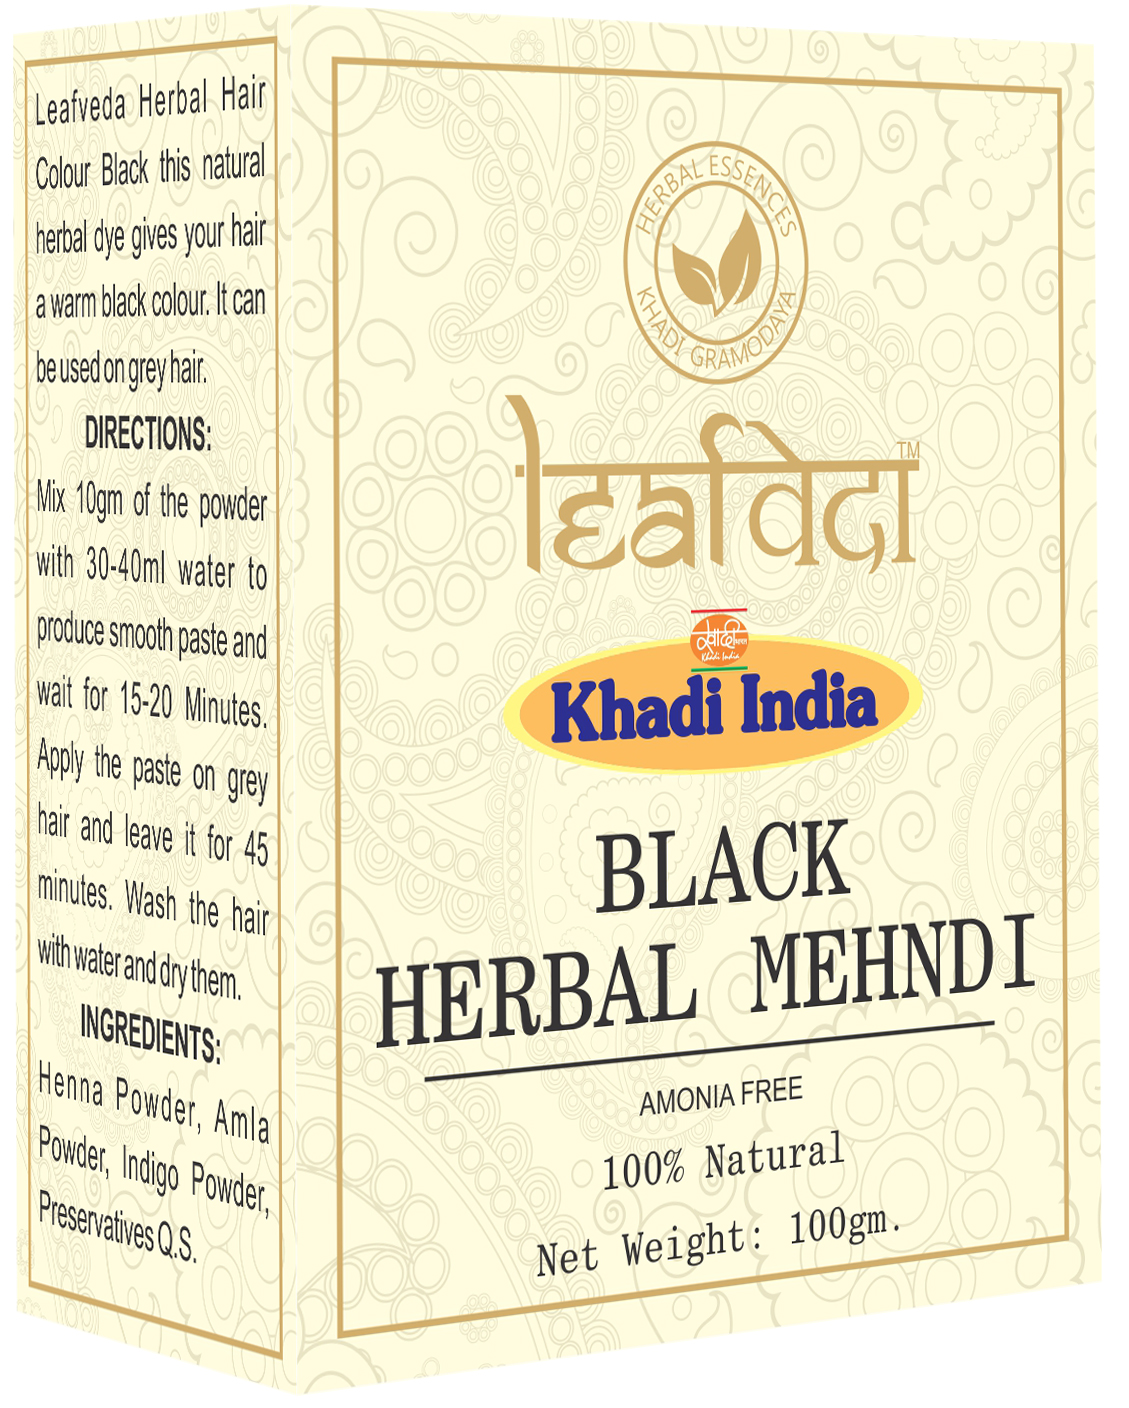 Khadi Leafveda Black Herbal Mehndi Amonia Free